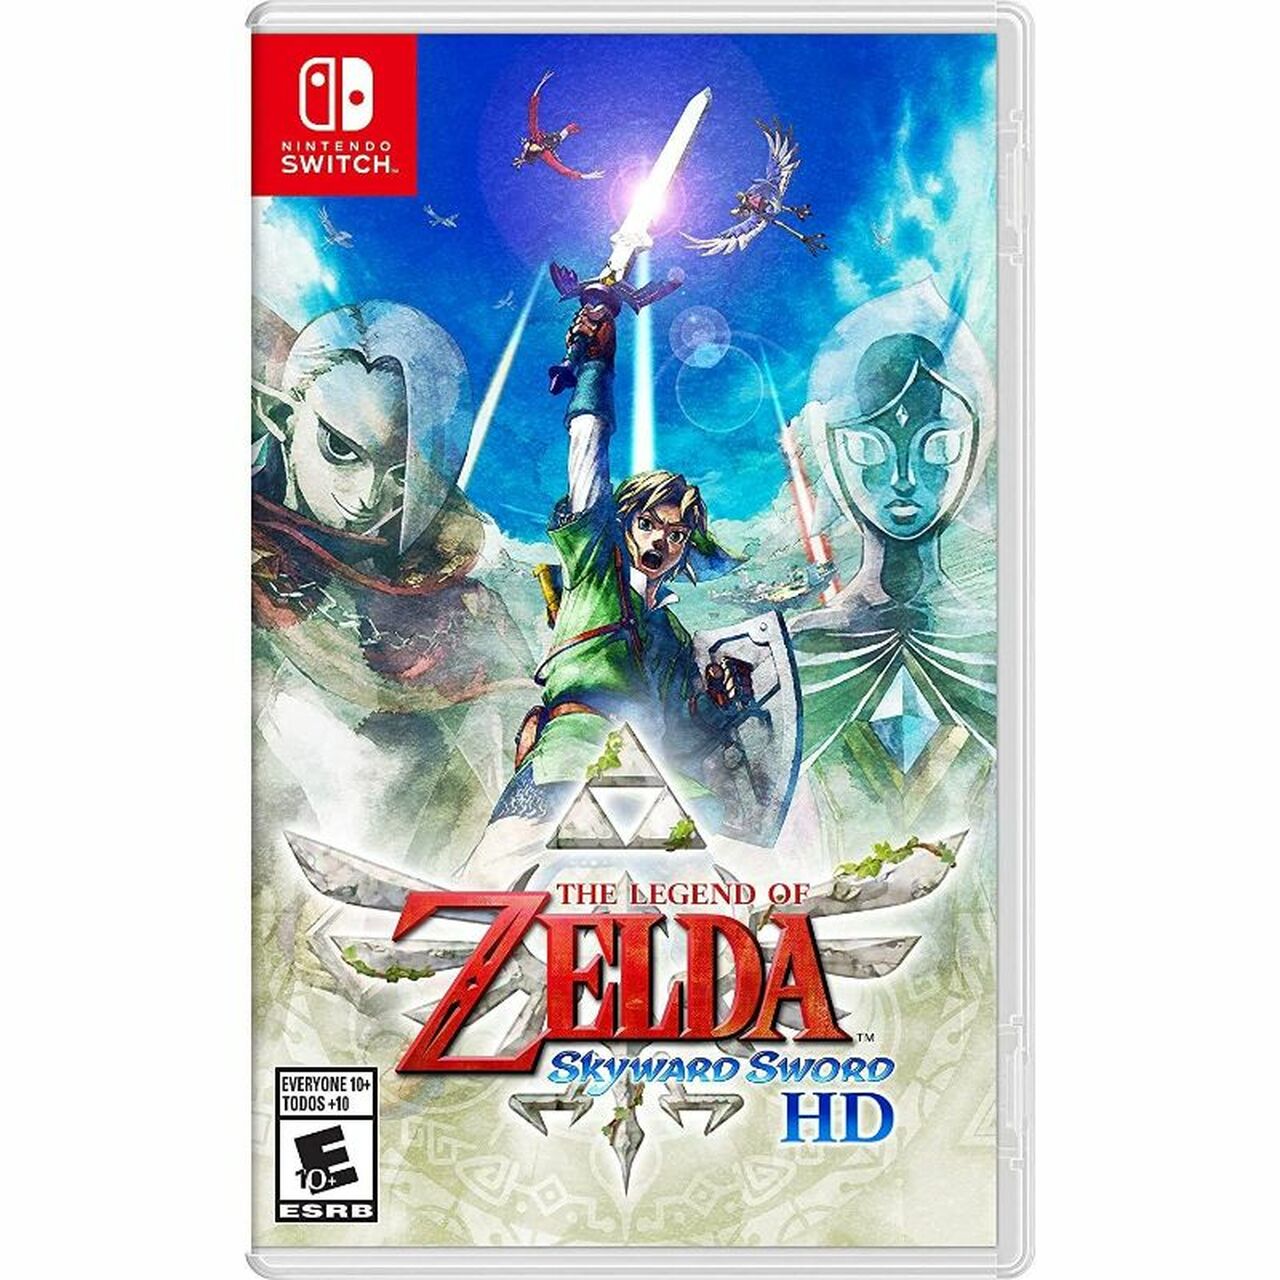 The Legend of Zelda: Skyward Sword HD - $44.99 w/ free shipping